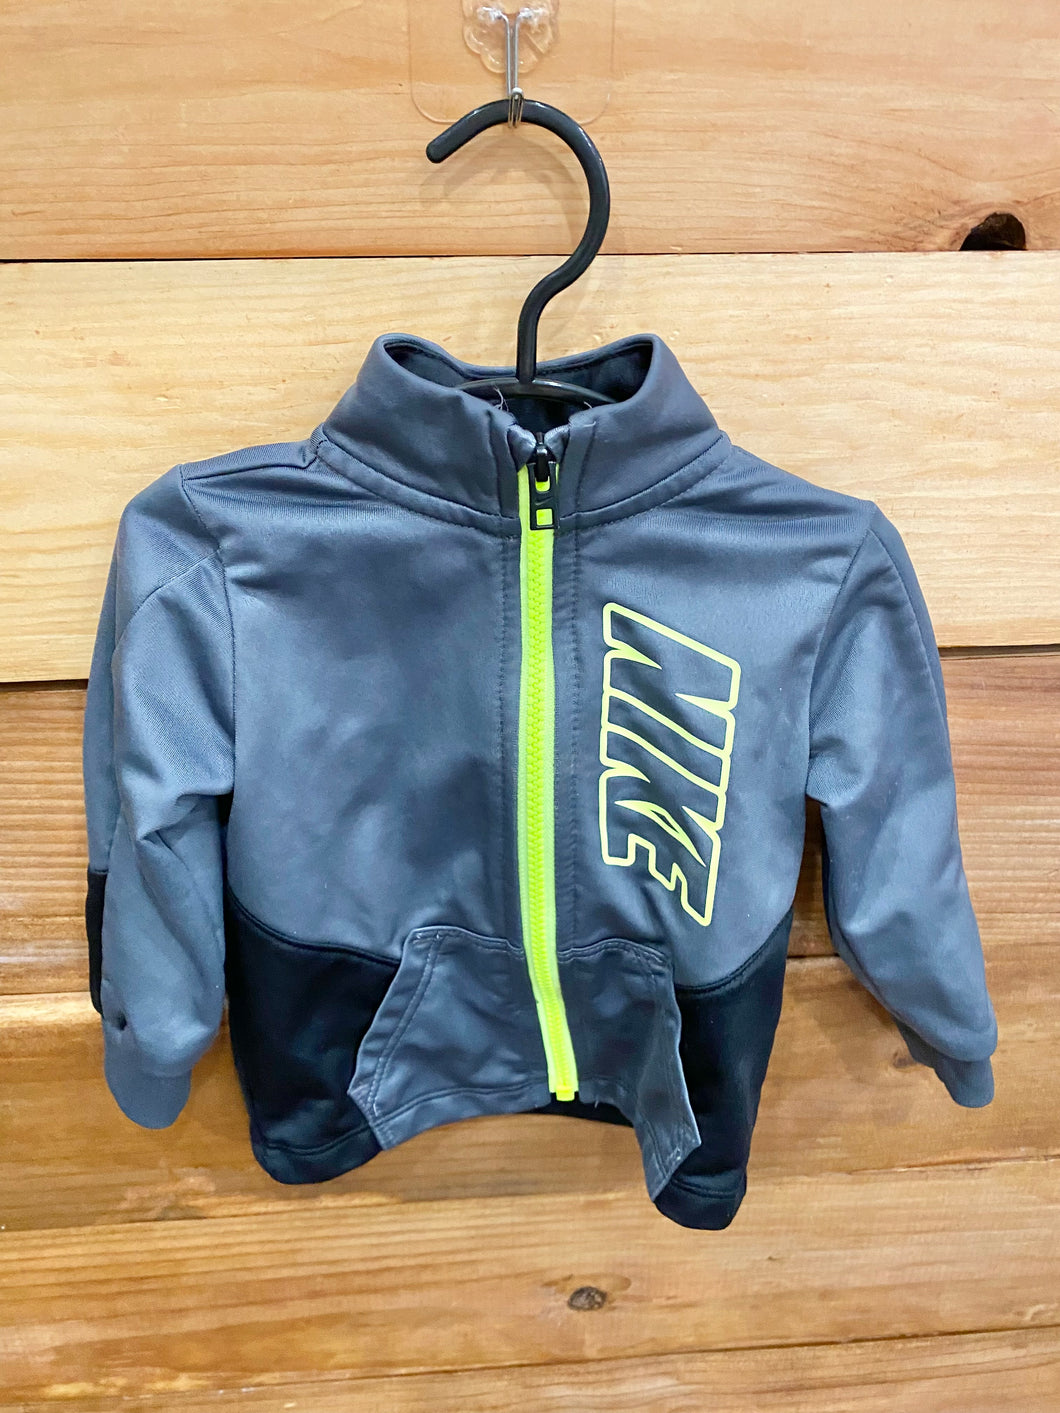 Nike Gray Jacket Size 12m